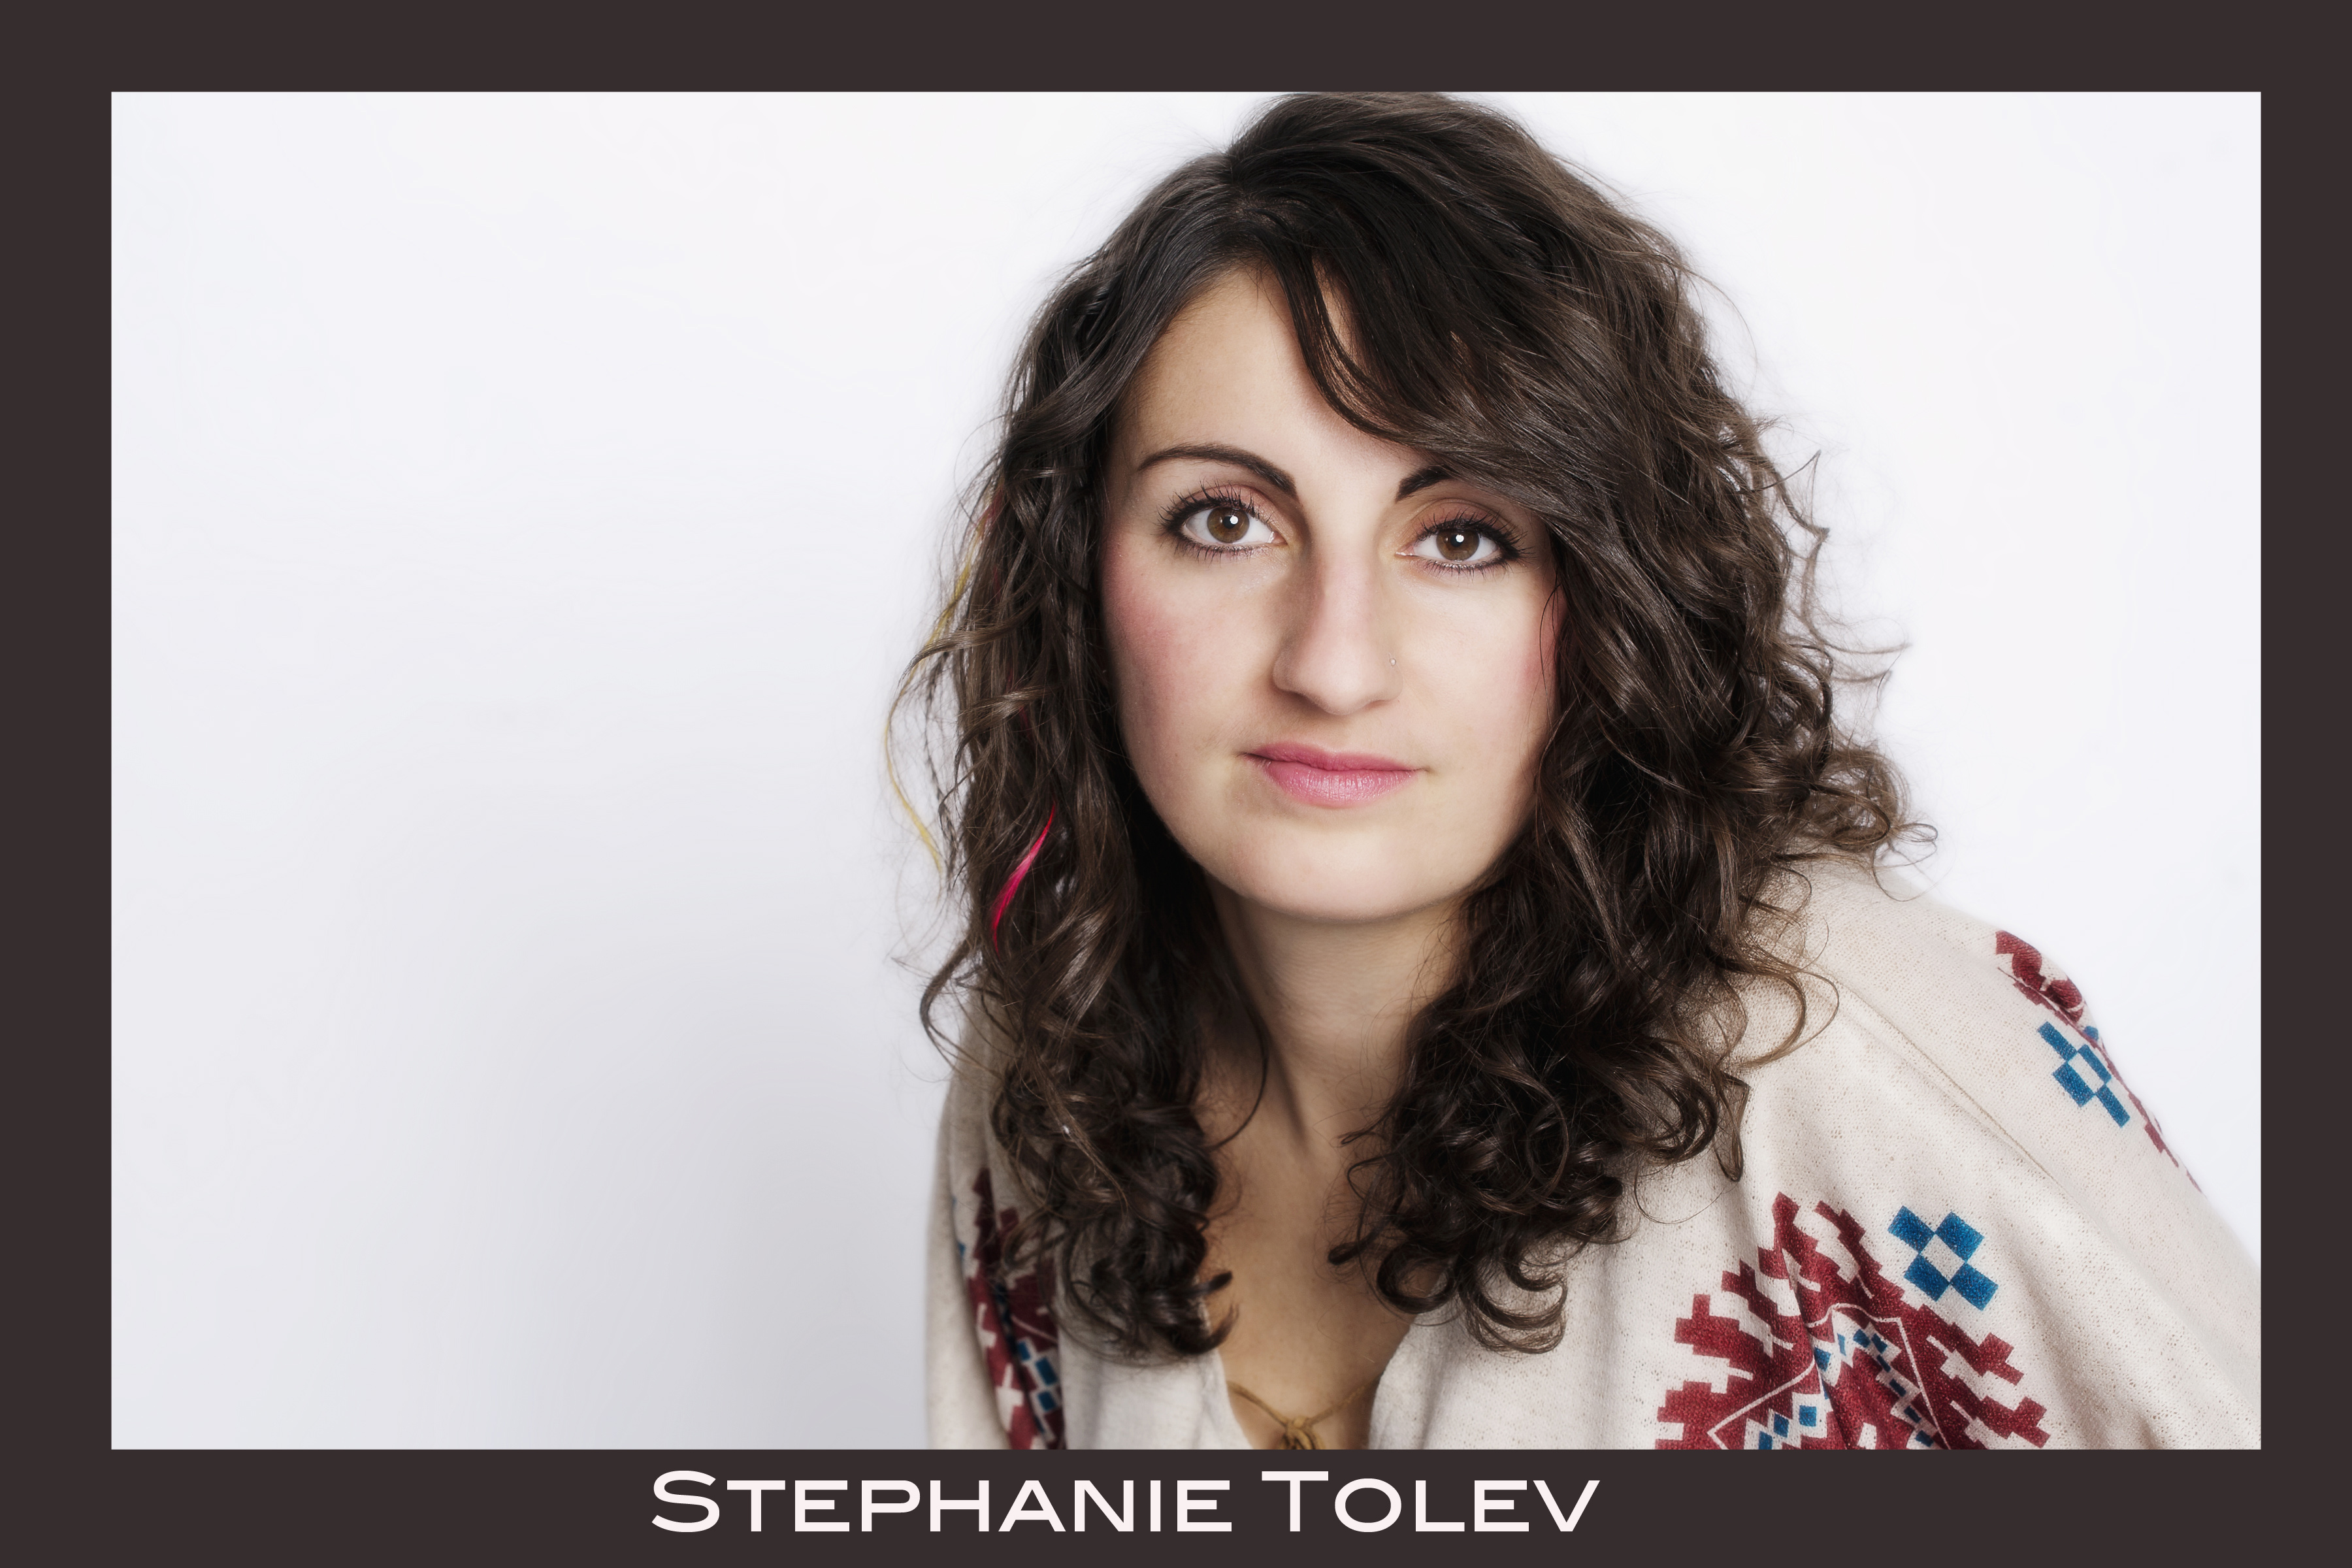 Stephanie Tolev